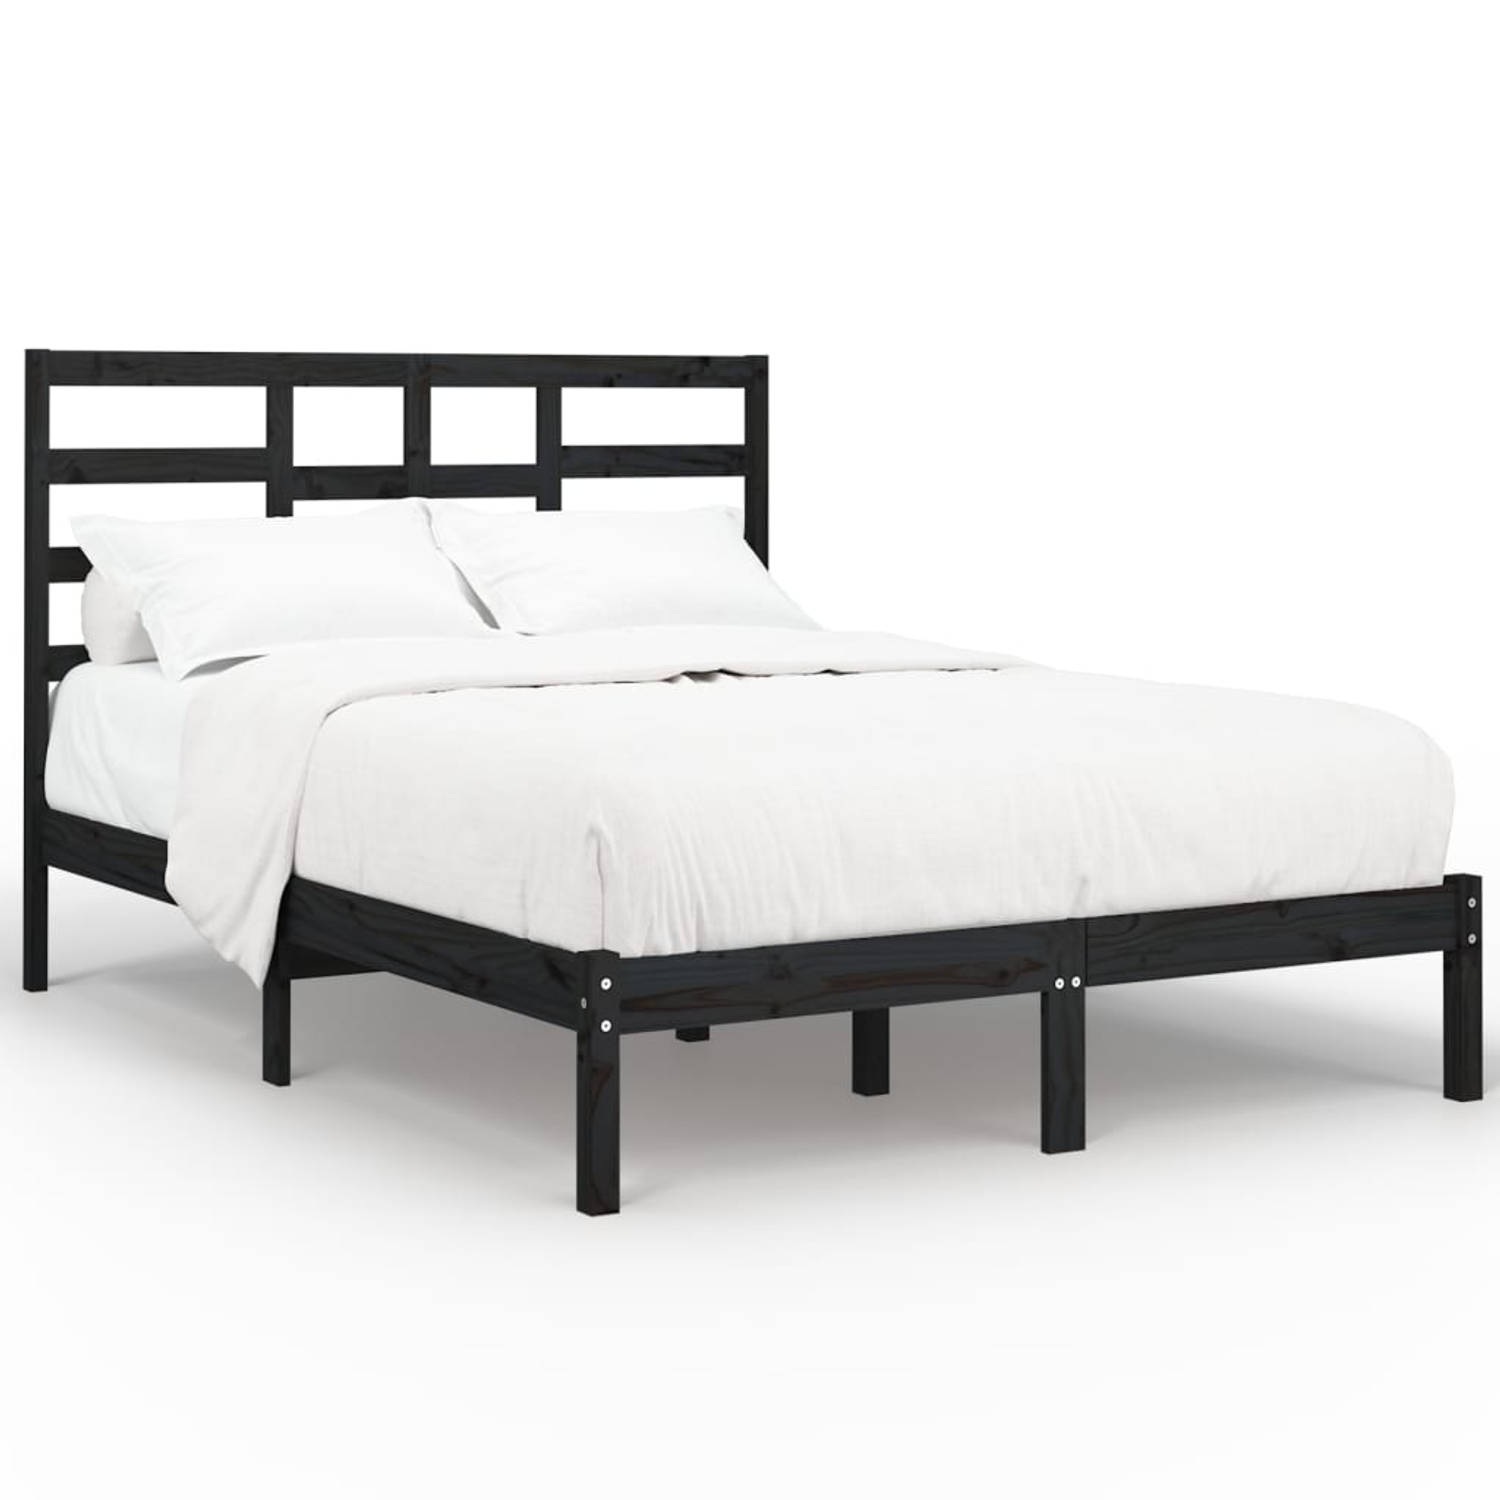 The Living Store Bedframe massief hout zwart 120x200 cm - Bedframe - Bedframes - Bed - Bedbodem - Ledikant - Bed Frame - Massief Houten Bedframe - Slaapmeubel - Tweepersoonsbed - B